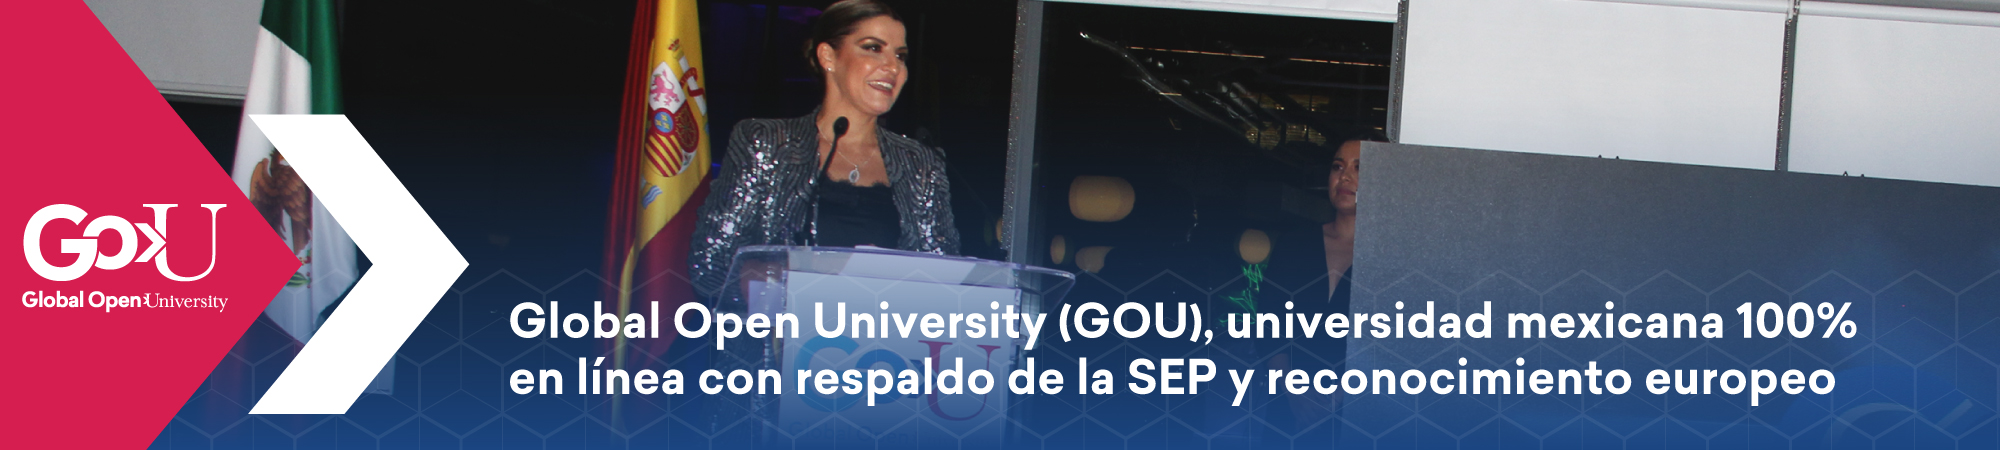 Global Open University (GOU), universidad mexicana 100% en línea con respaldo de la SEP y reconocimiento europeo